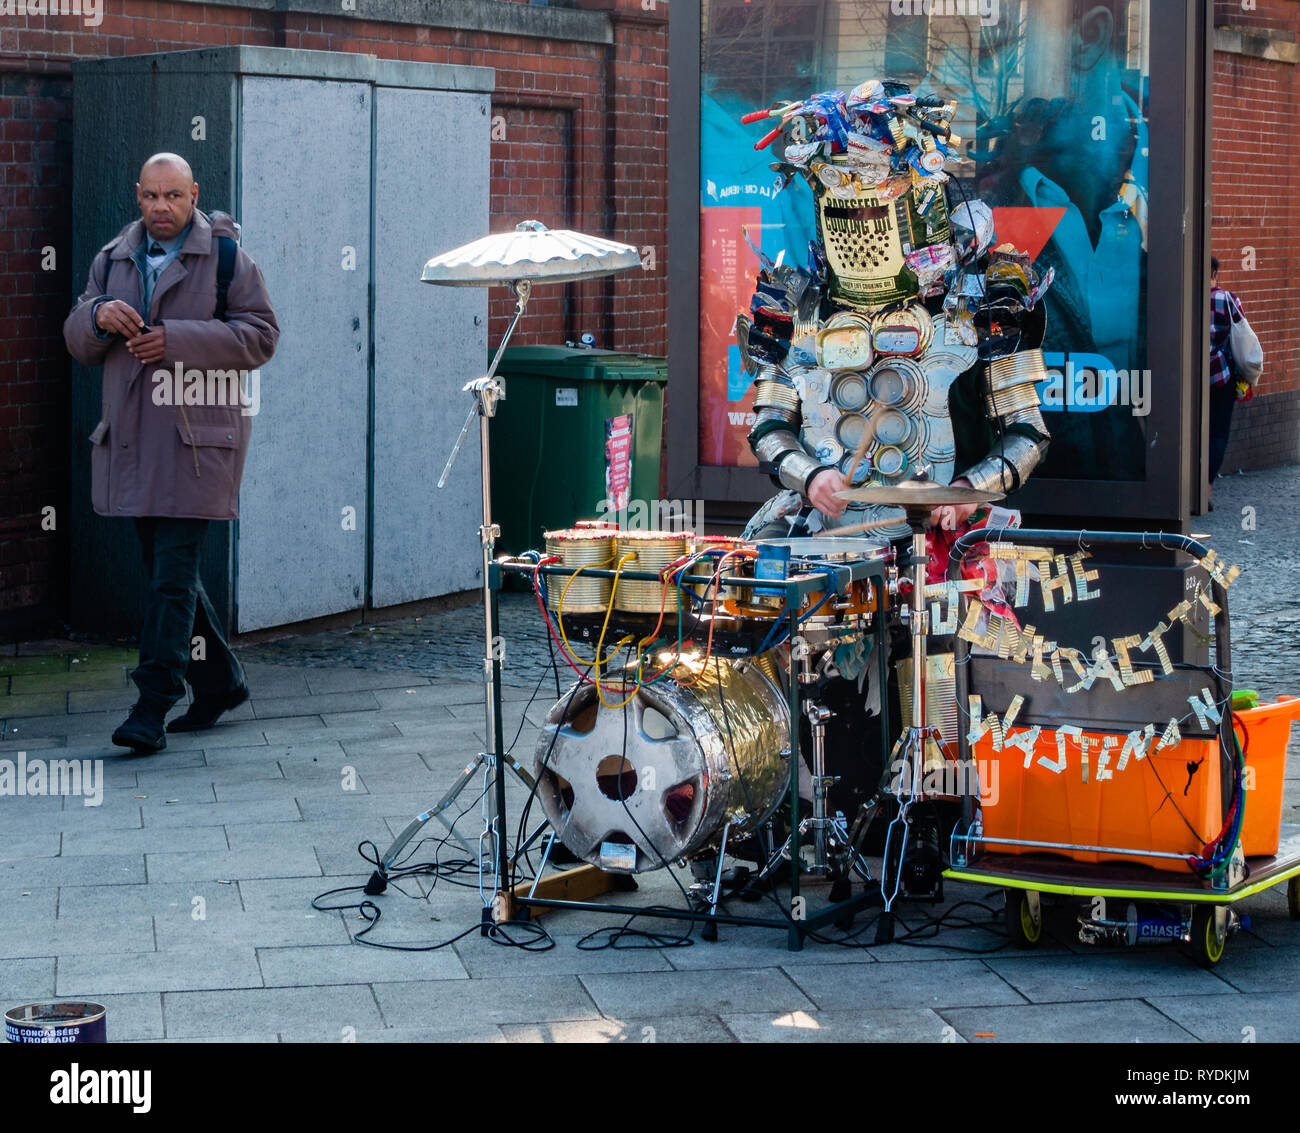 Homme marchant au-delà d'un musicien ambulant Le Junkoactive Tinphonia Wasteman et son un one man band de heavy metal articles recyclés dans le centre-ville de Bristol UK Banque D'Images